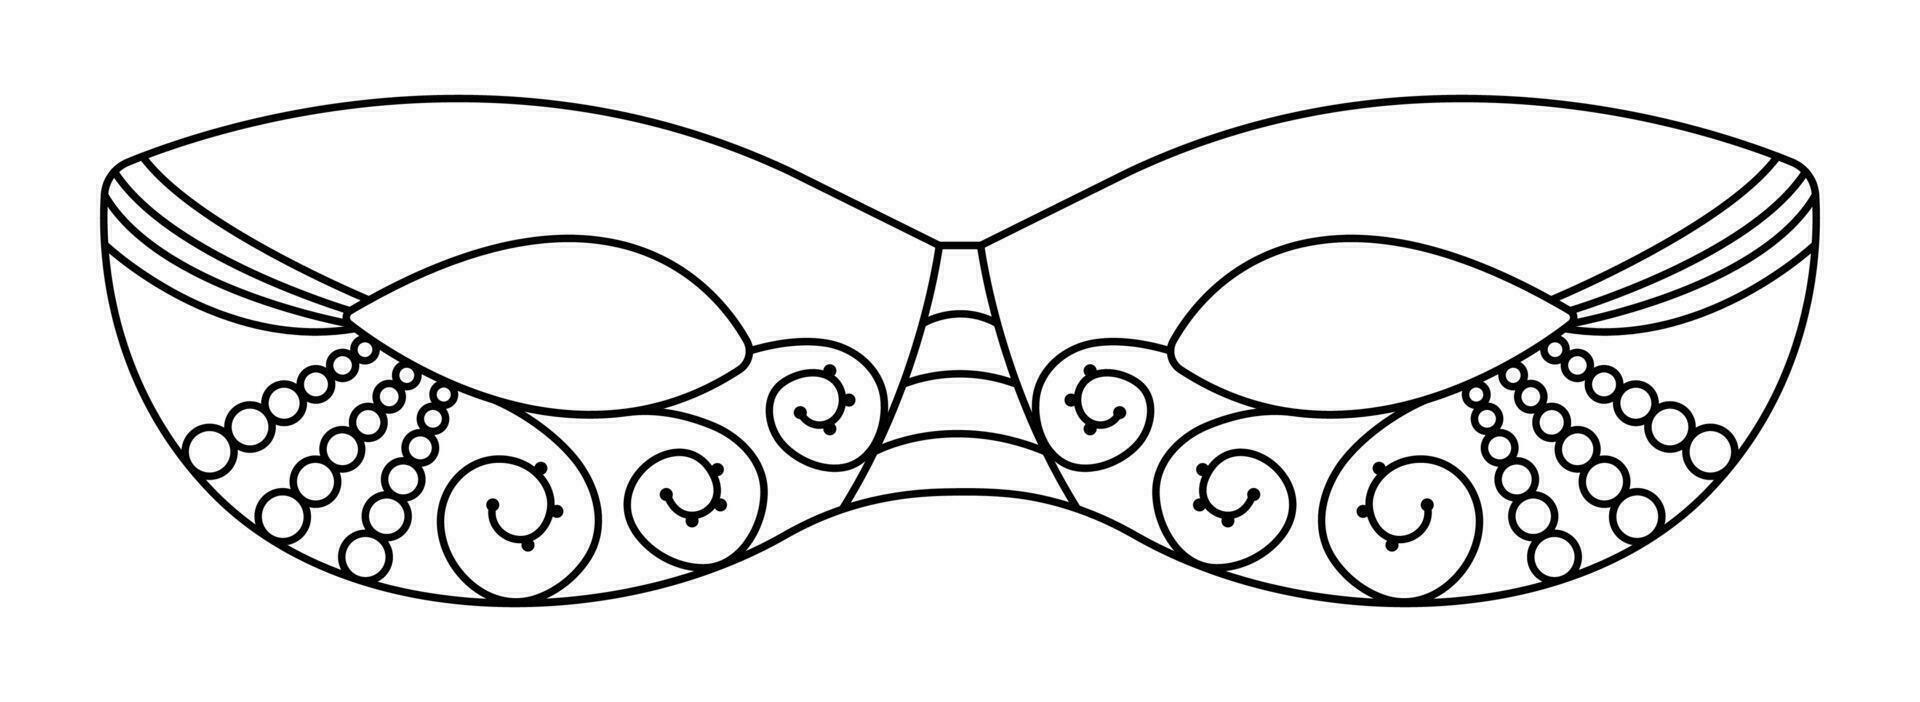 svart linje maskerad mask med pärlor och spets, vektor illustration för mardi gras